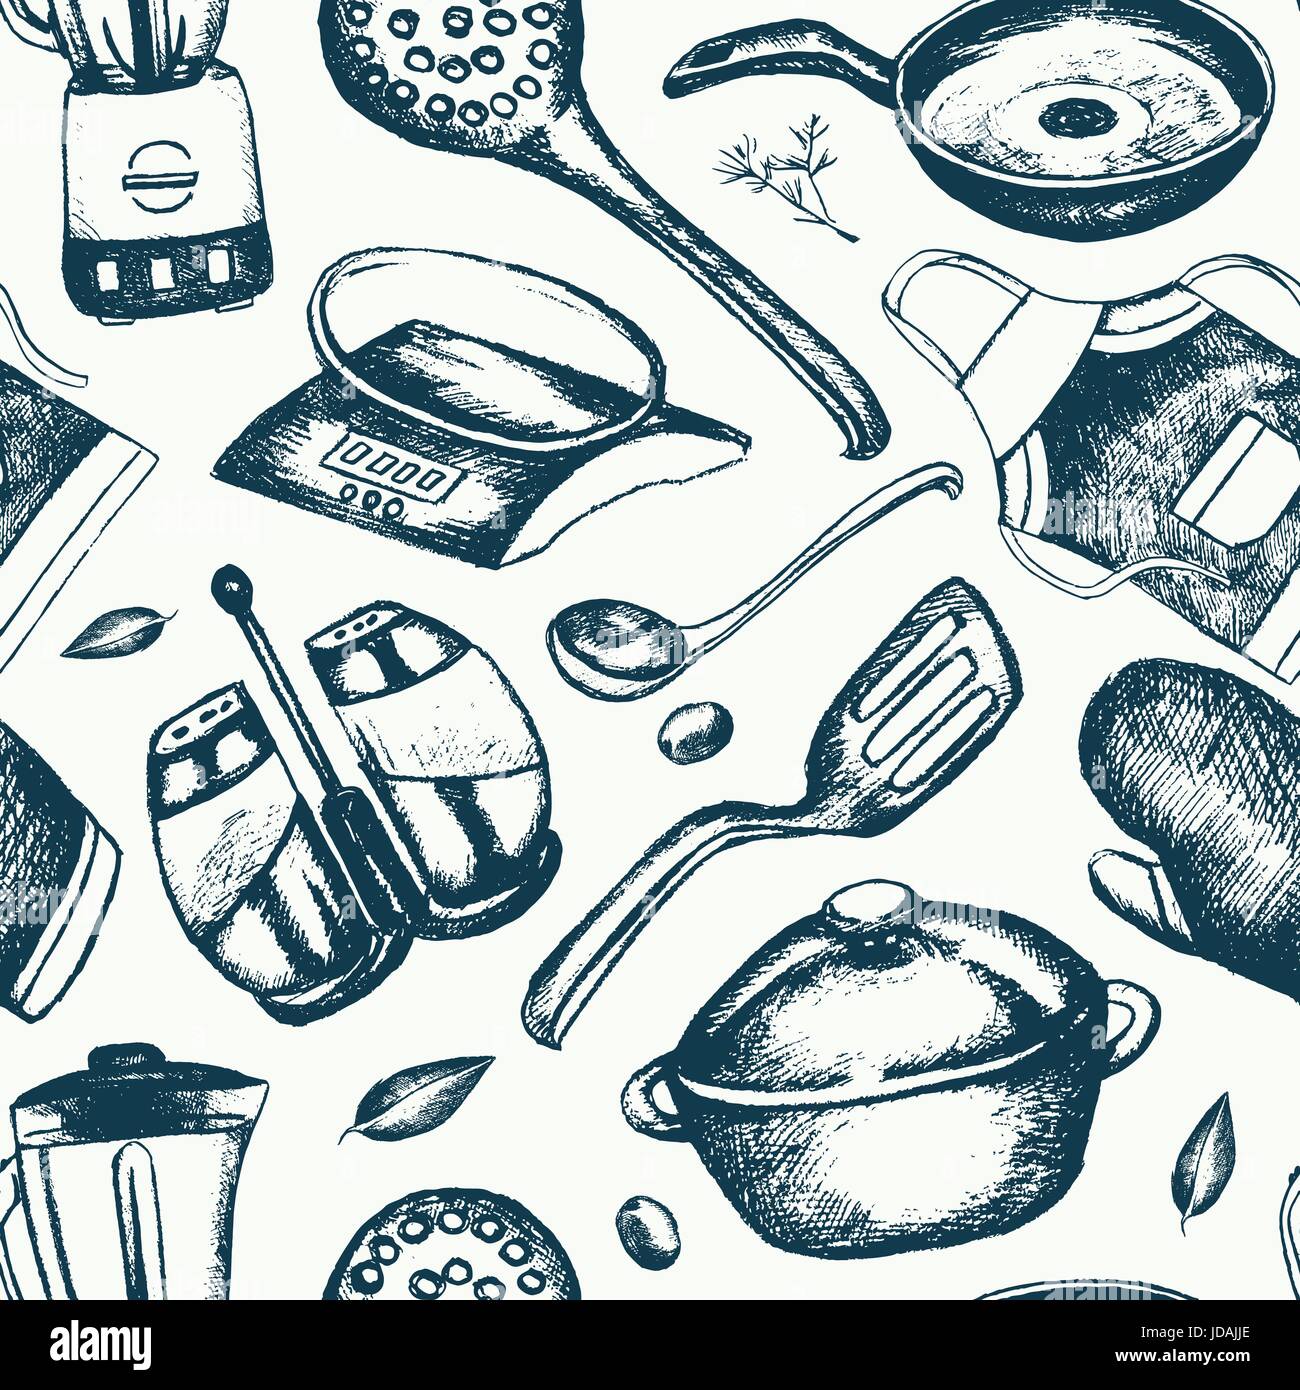 Geschirr - Hand gezeichnete nahtlose Muster Stock Vektor